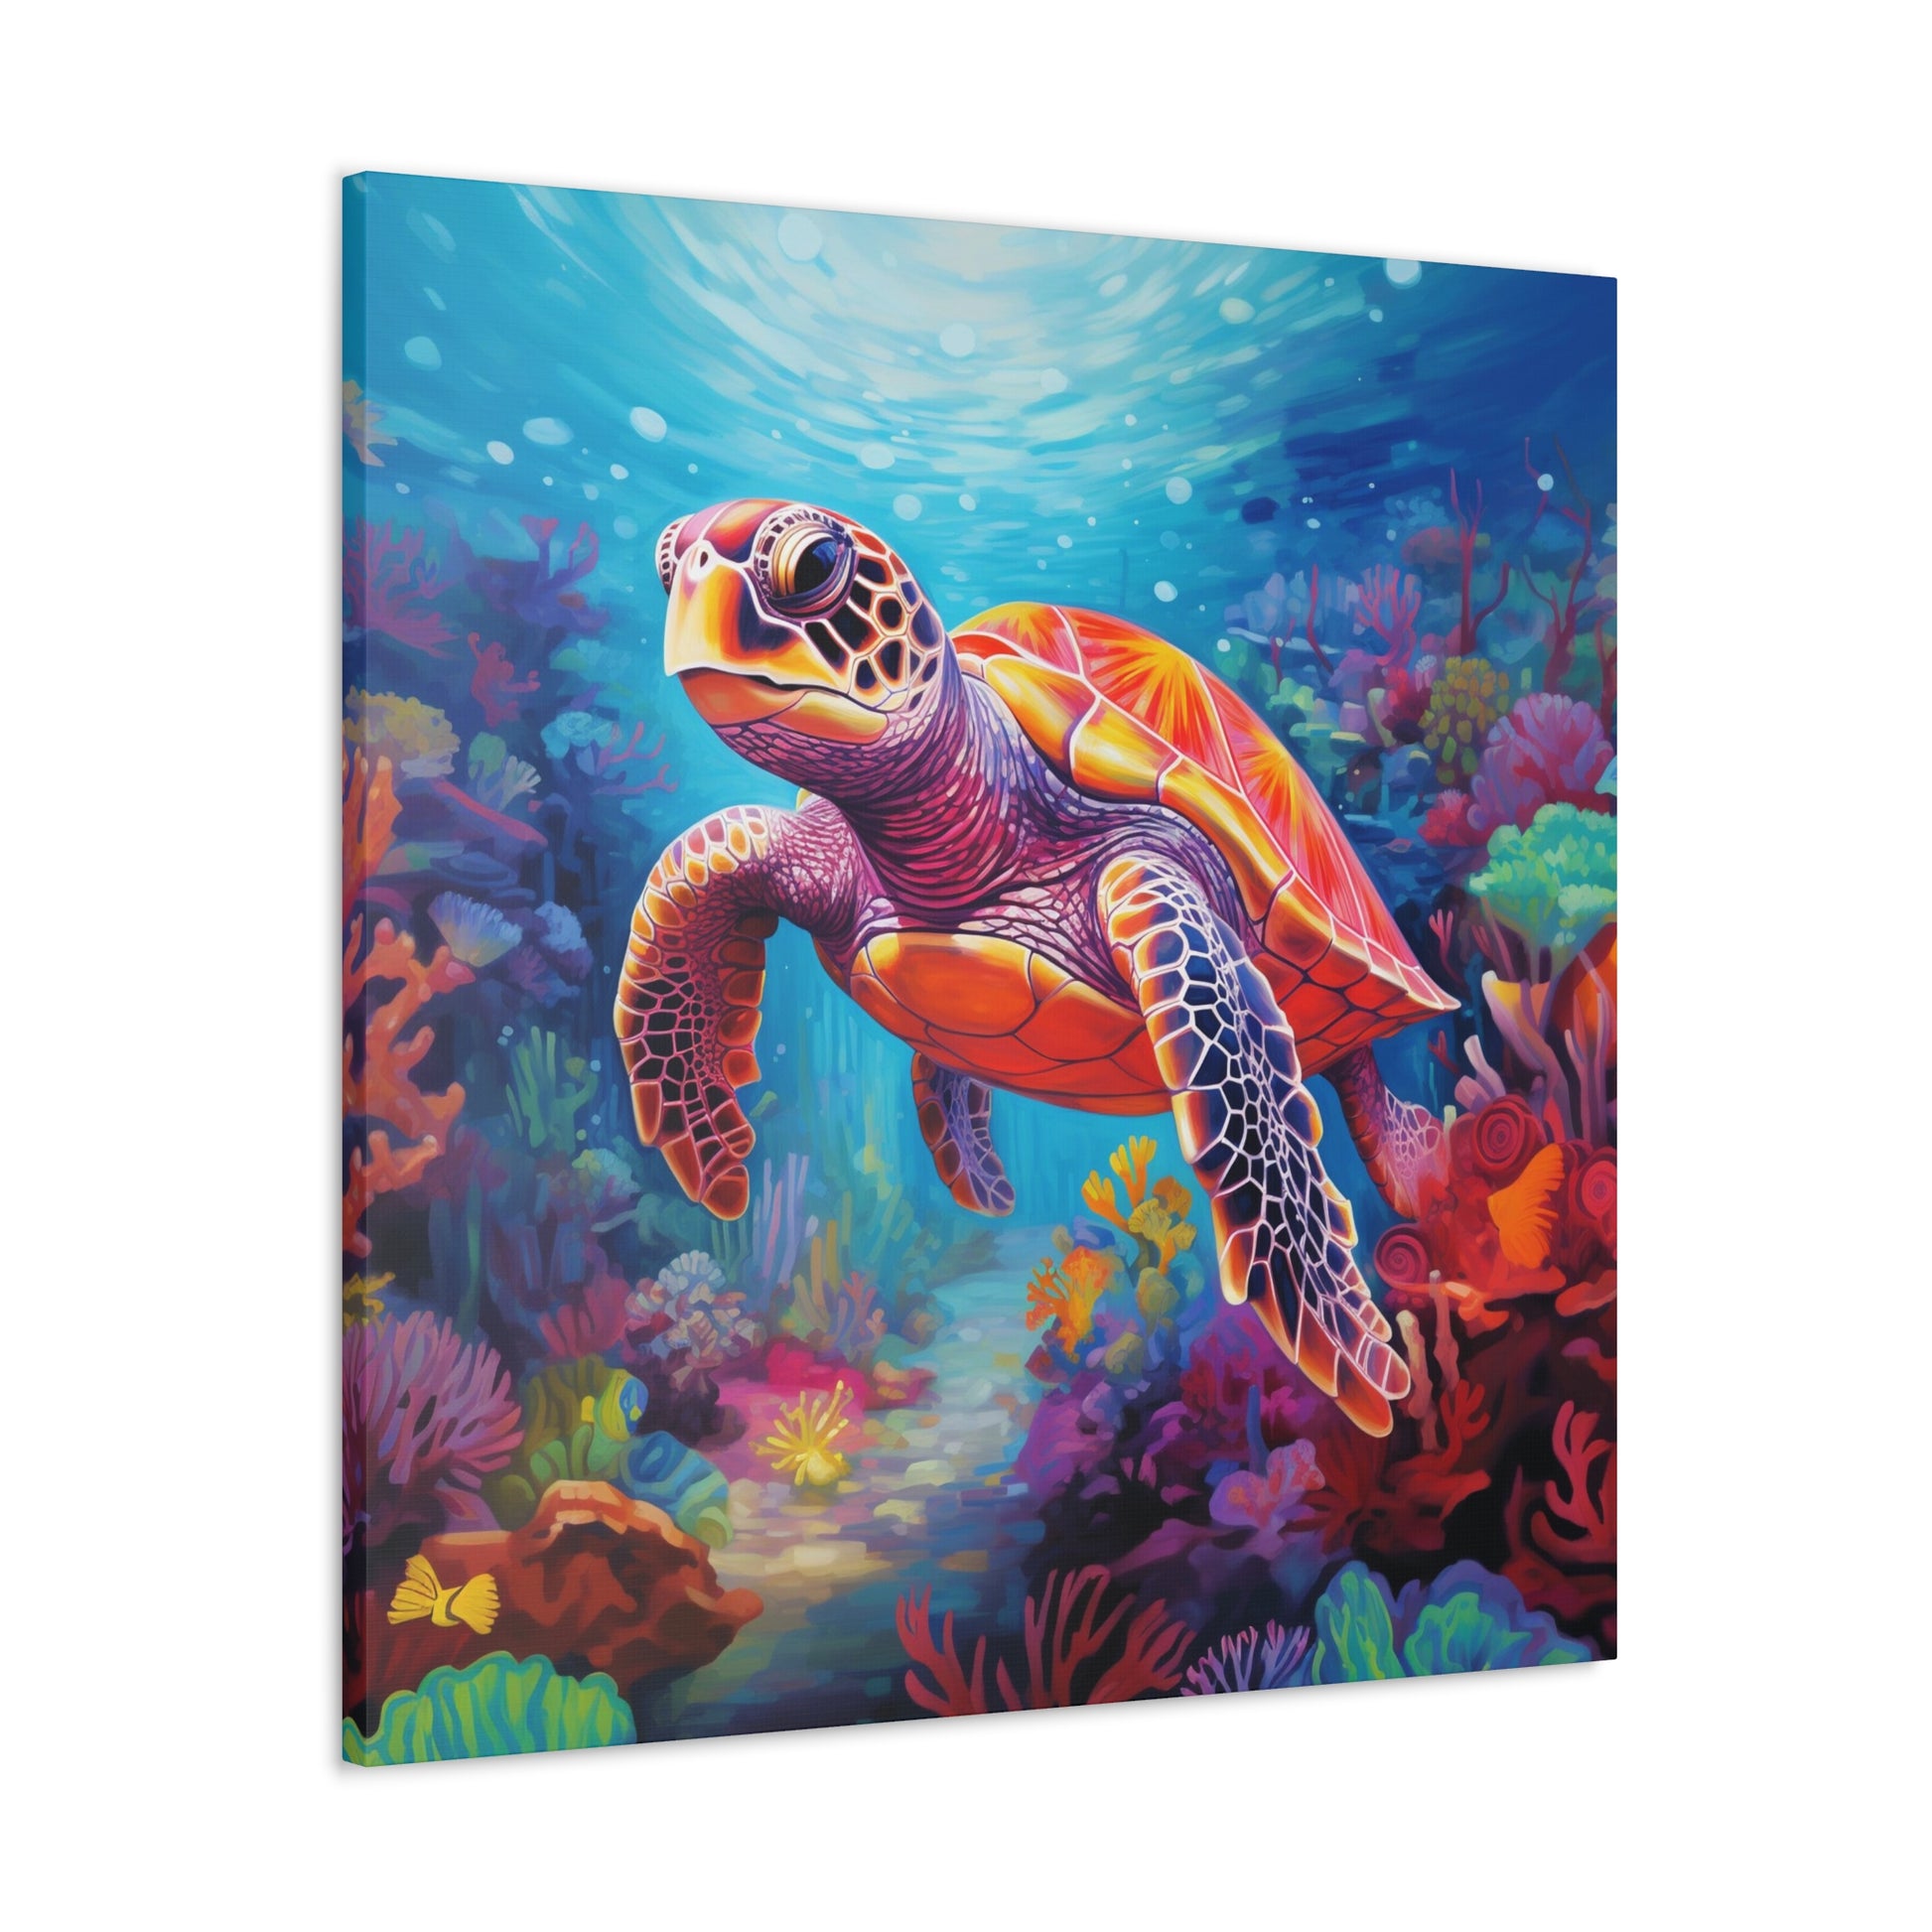 sea turtle wall decor ideas